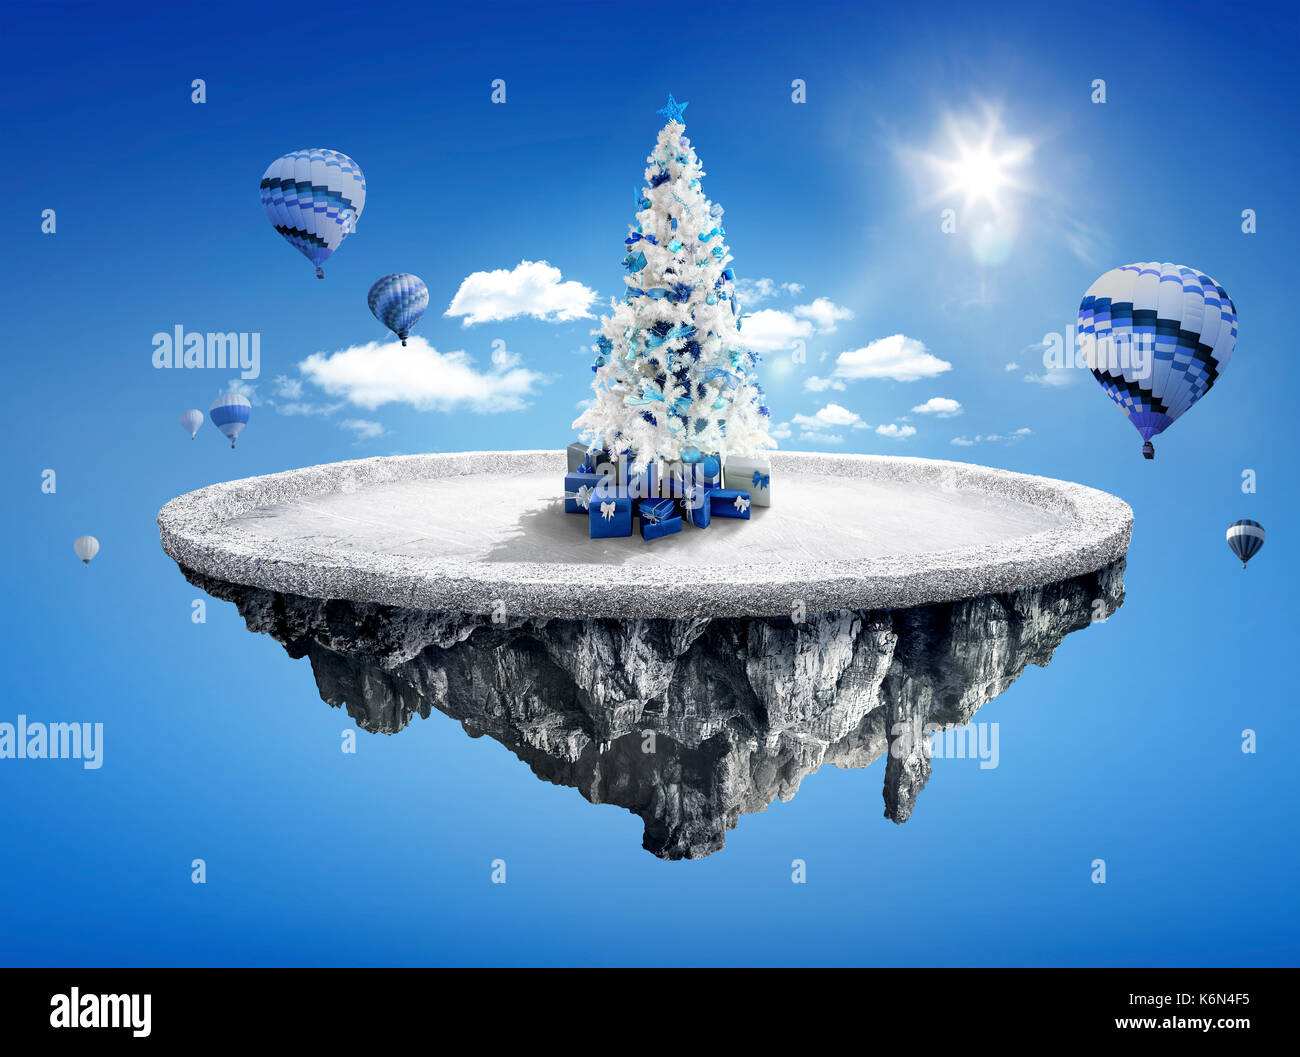 Amazing fantasy Landschaft mit schwimmenden Inseln mit weißen Weihnachtsbaum, heiße Ballons und Dekoration im Winter Stockfoto